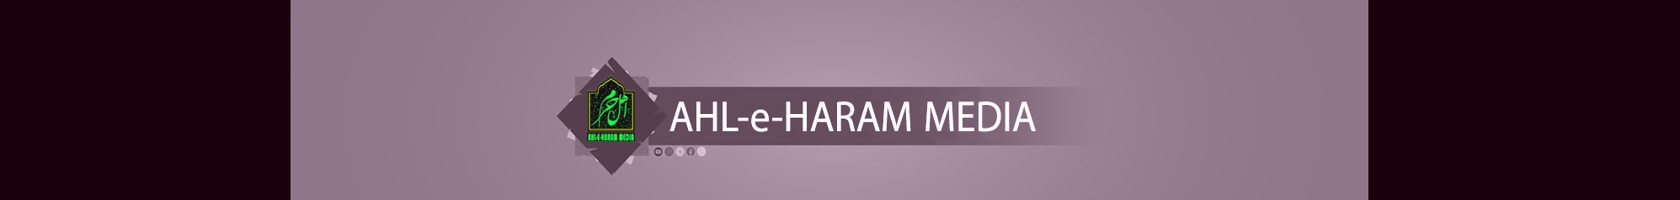  Ahl-e-Haram Media